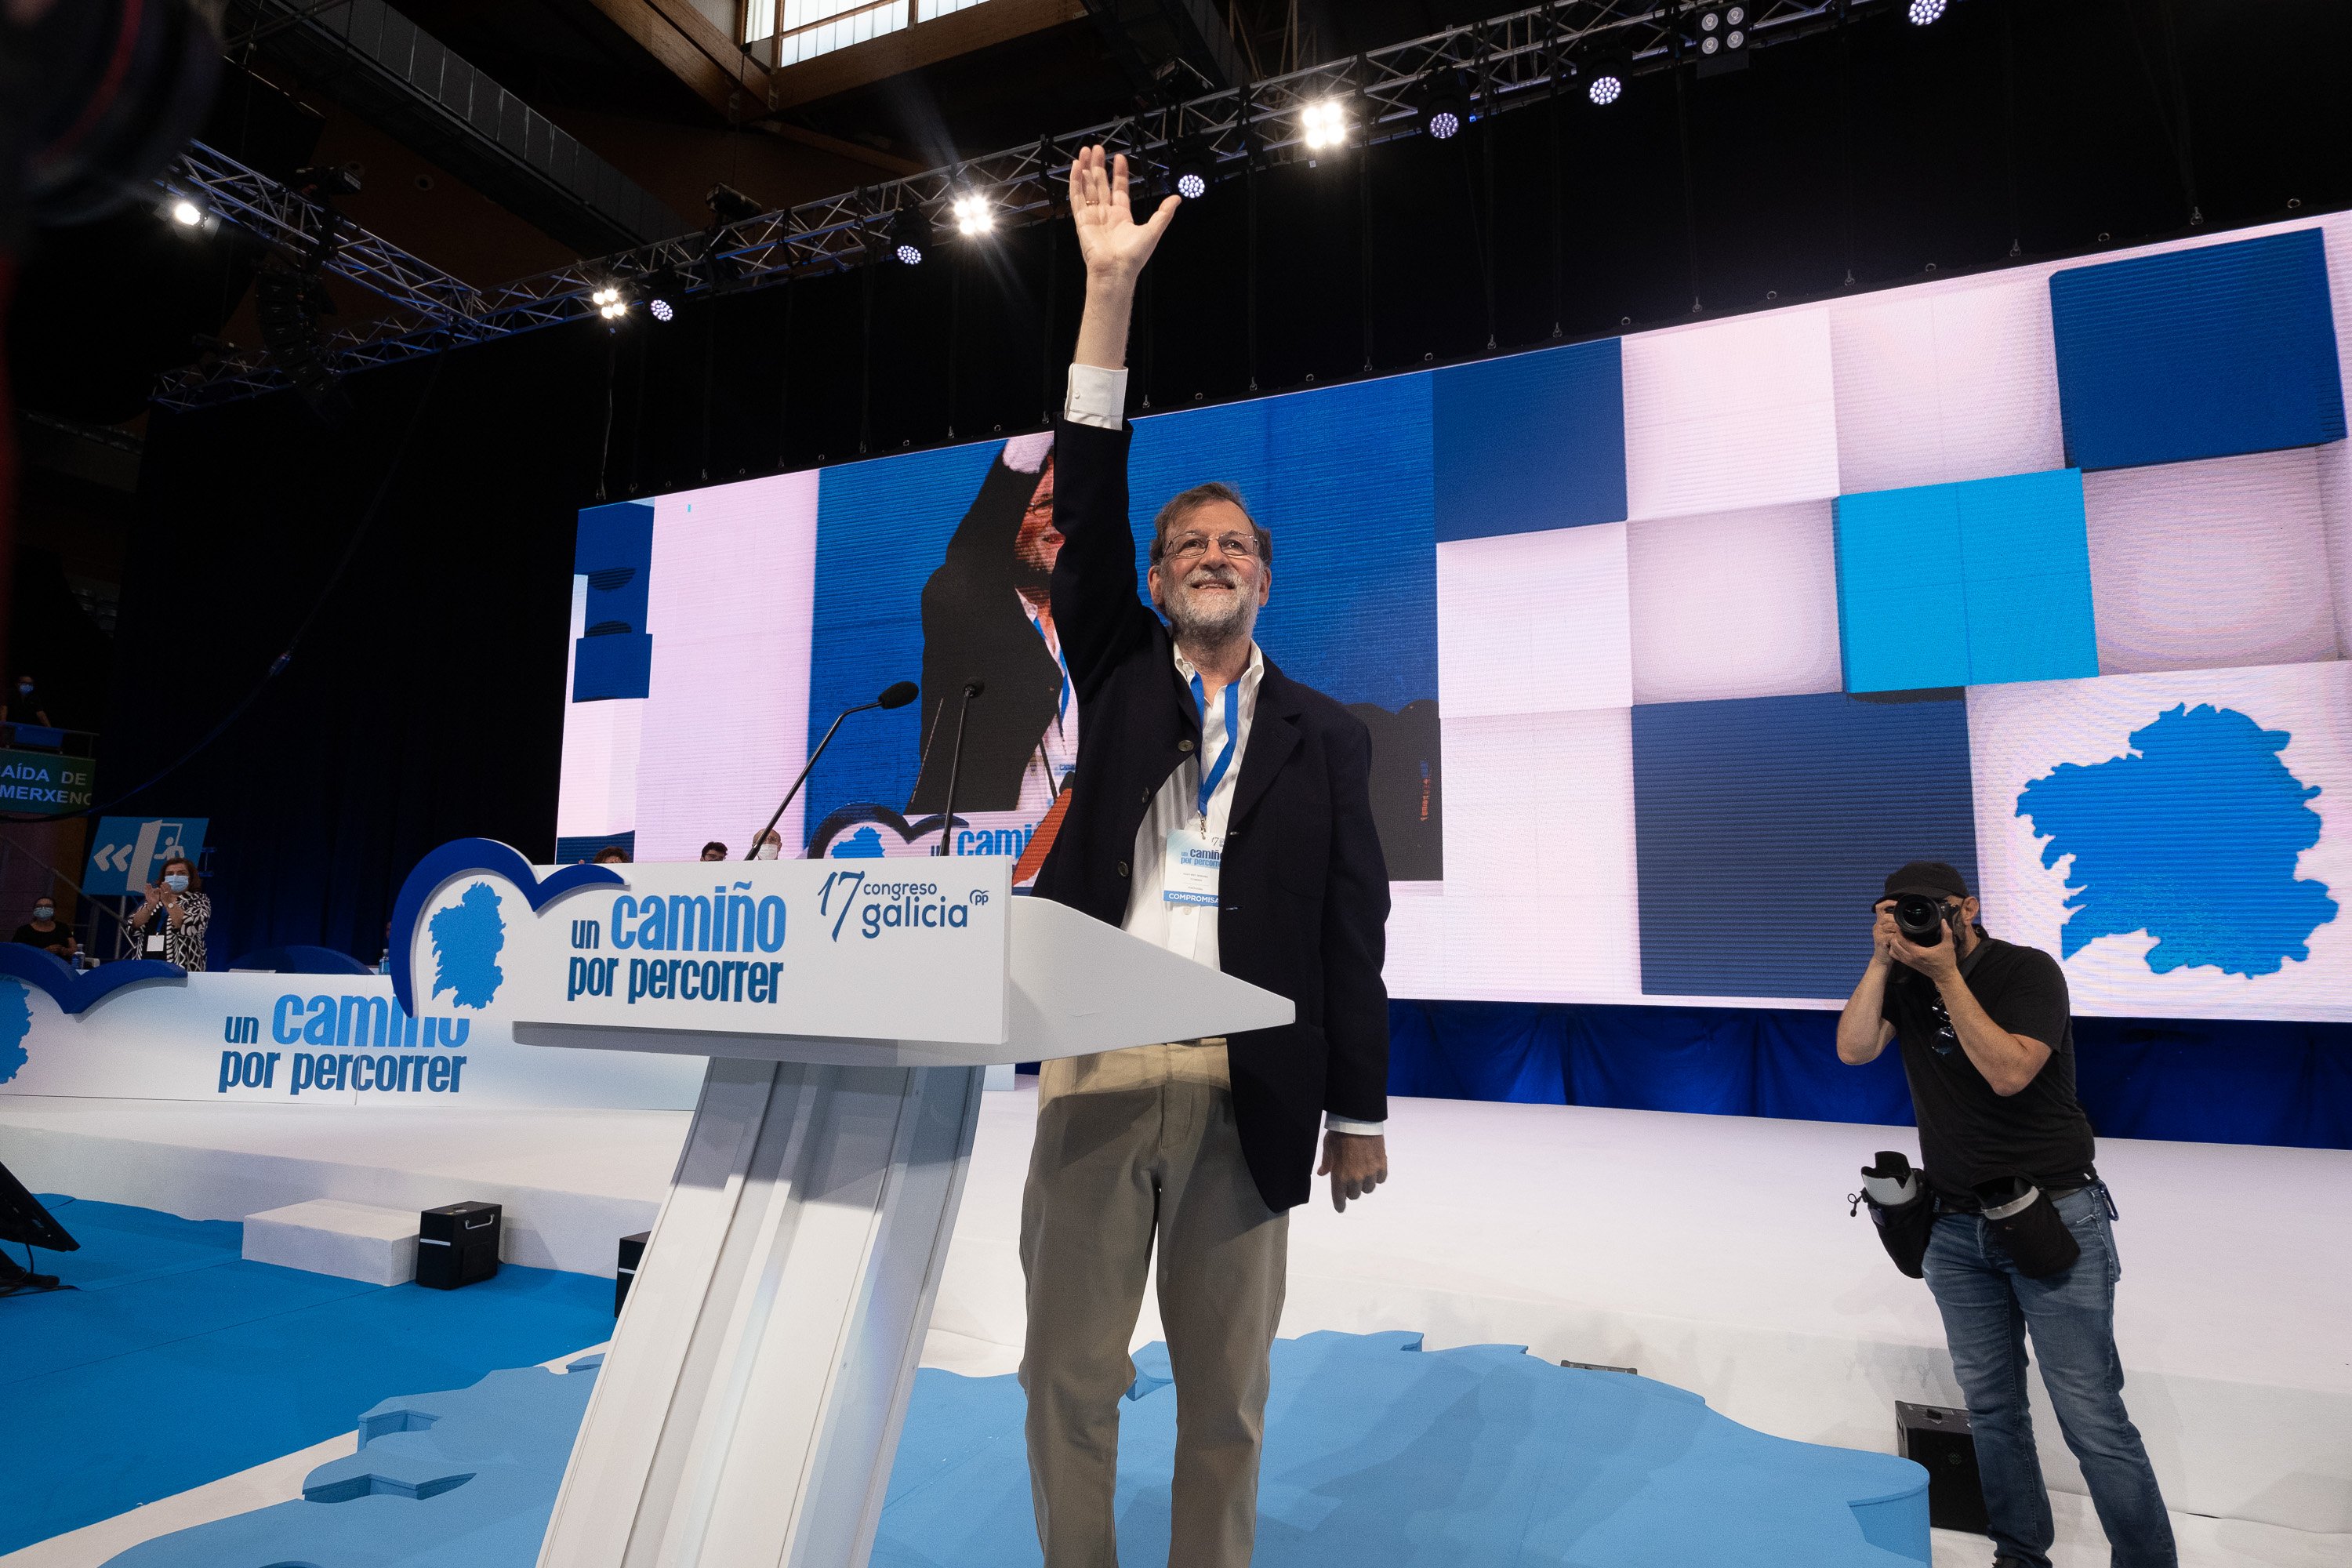 Rajoy blasma el llenguatge inclusiu: "Hi ha massa puntada de peu al diccionari"